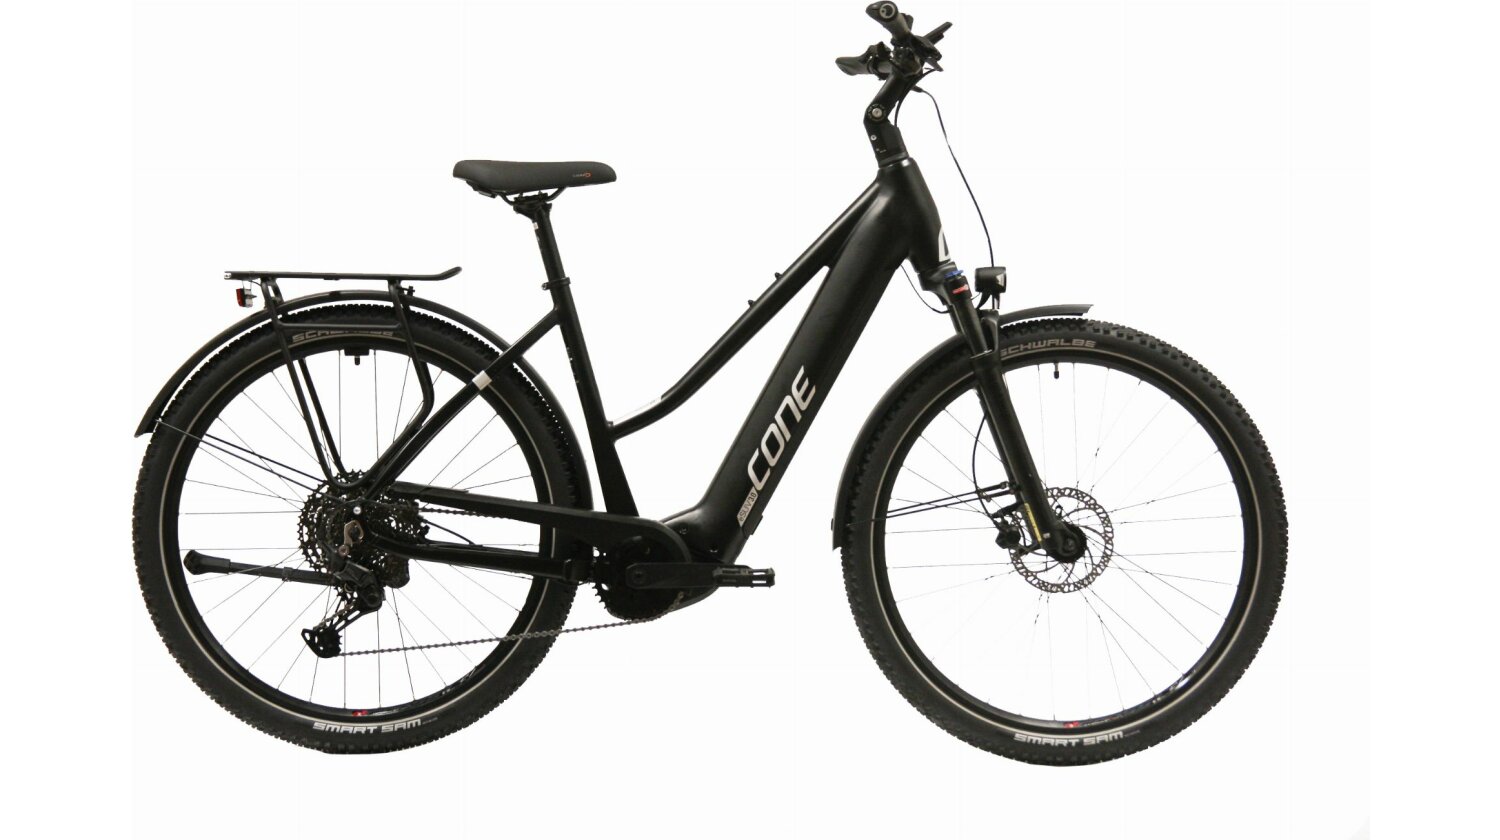 Cone eSUV IN 3.0 750 Wh E-Bike Trapez 29" schwarz/grau